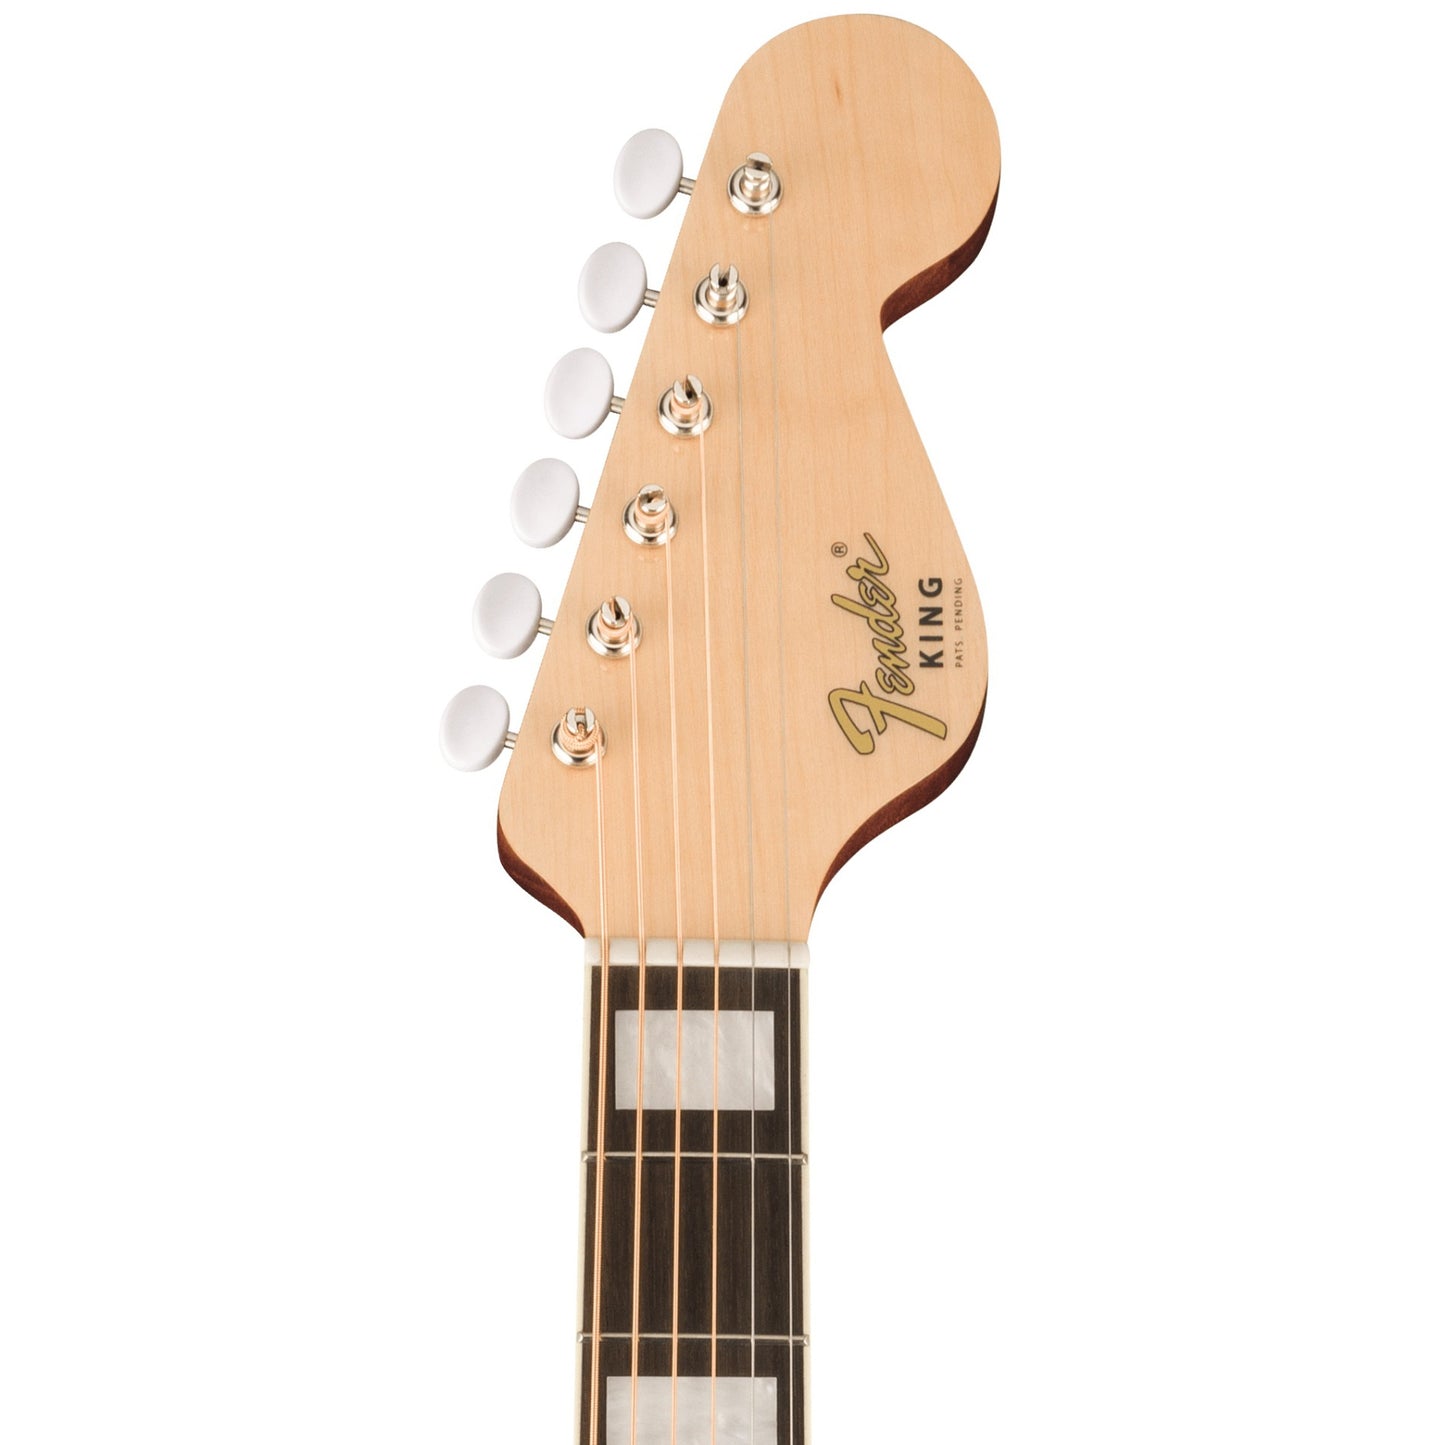 Fender King Vintage - Aged Natural, Ovangkol Fingerboard, Gold Pickguard